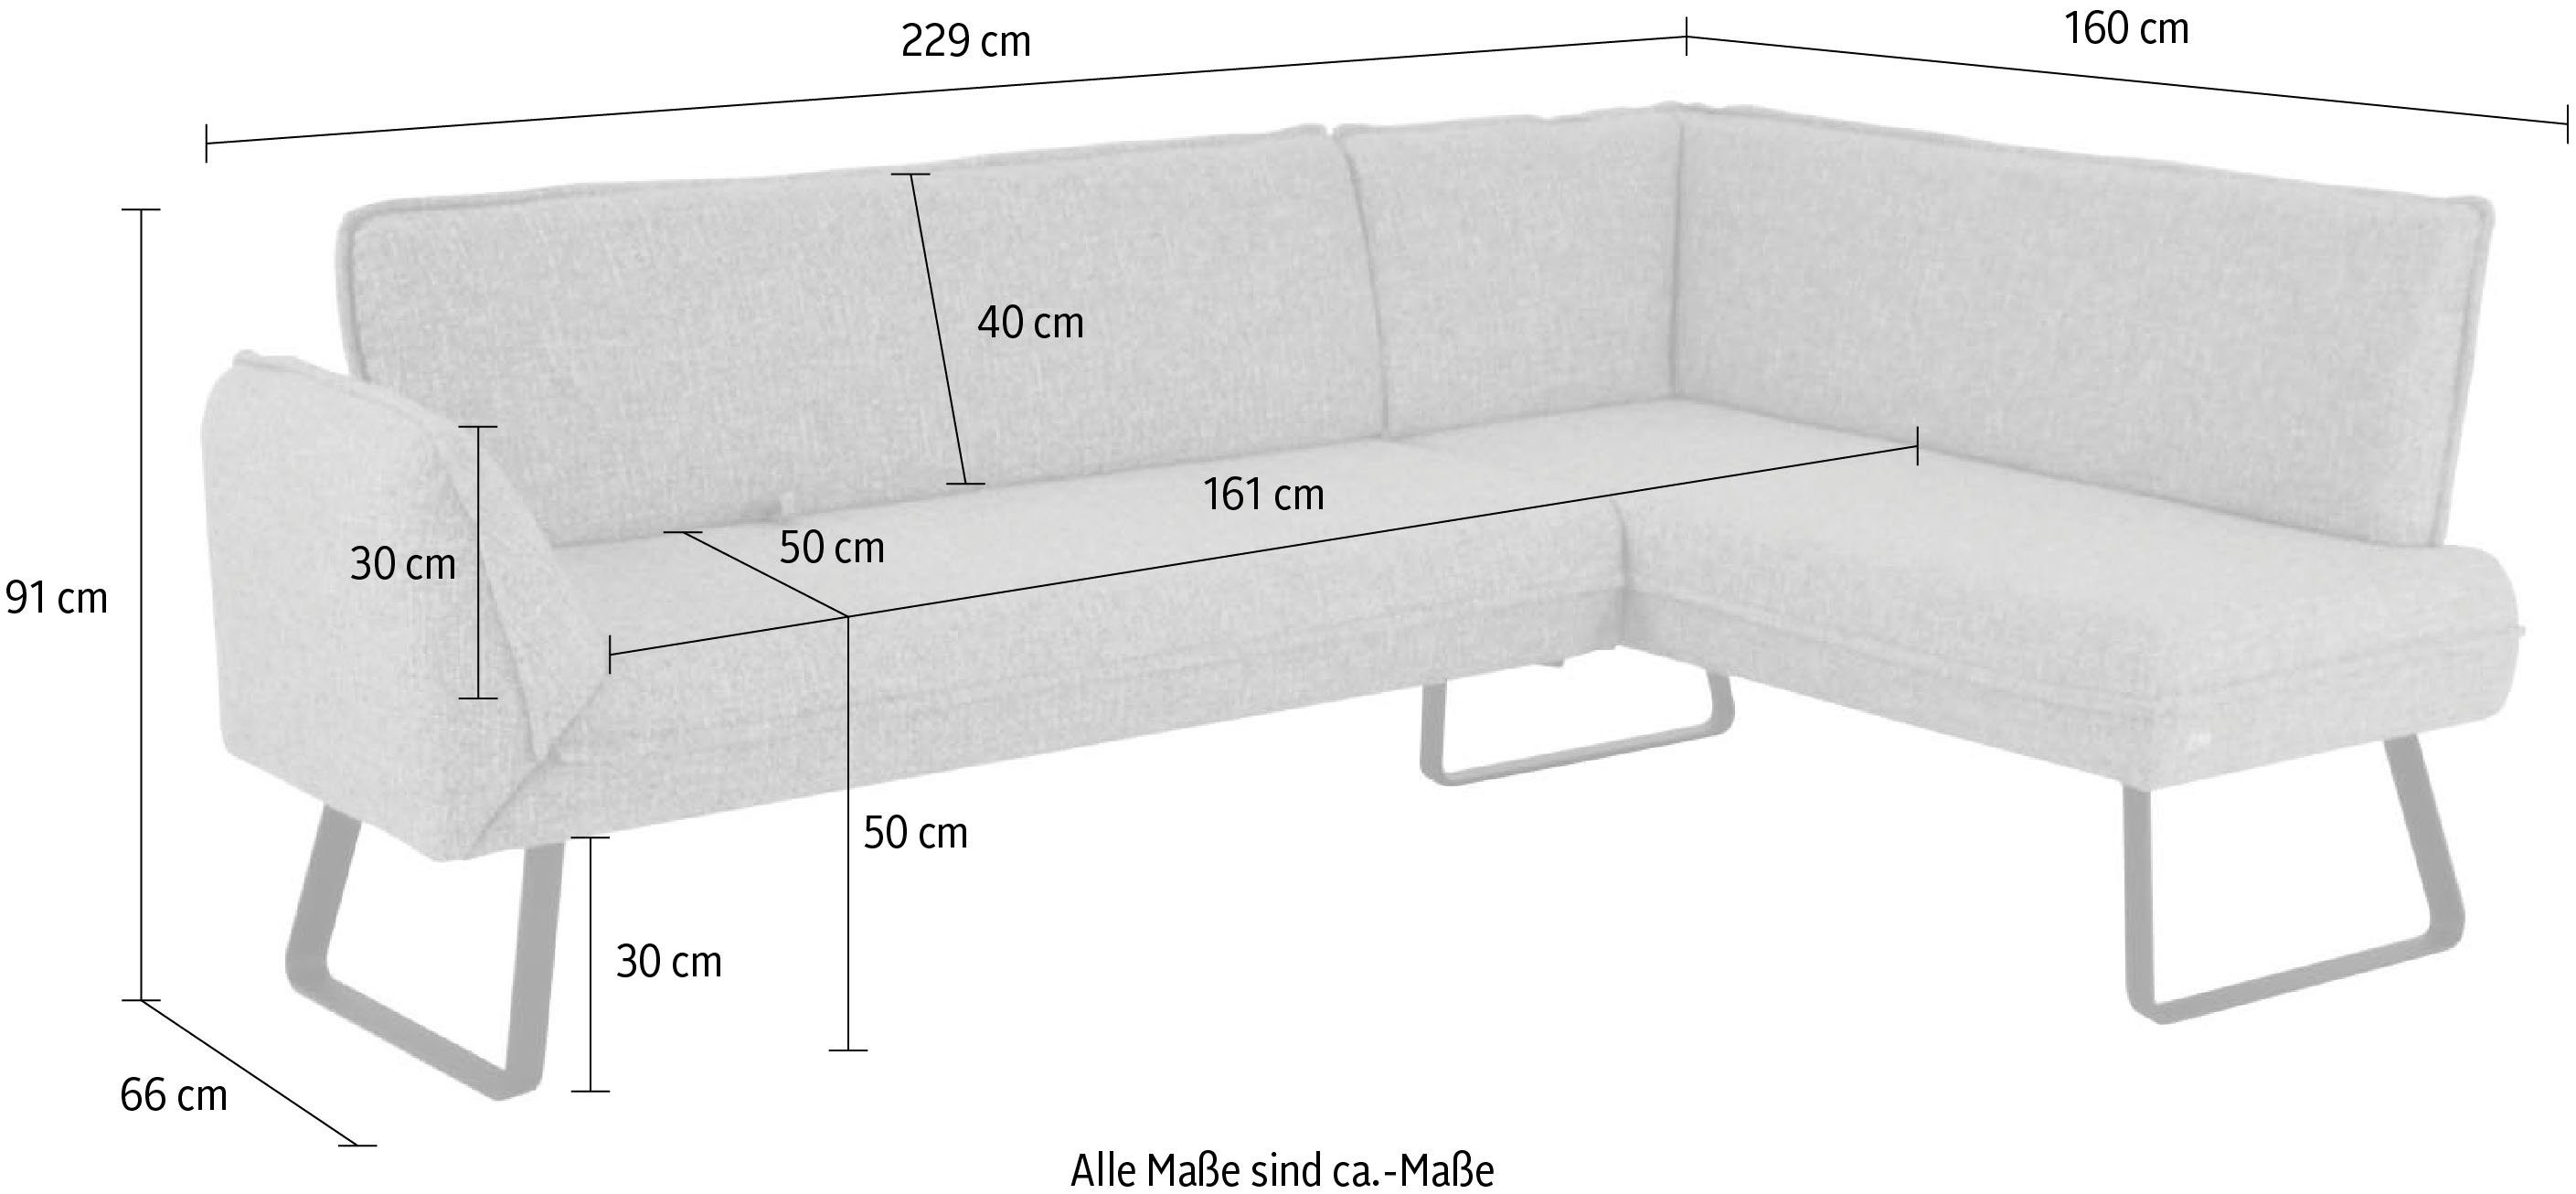 K+W Komfort & Wohnen Eckbank Sitzplatzerweiterung Seitenteilverstellung Schenkel mit am langem Drive, zur